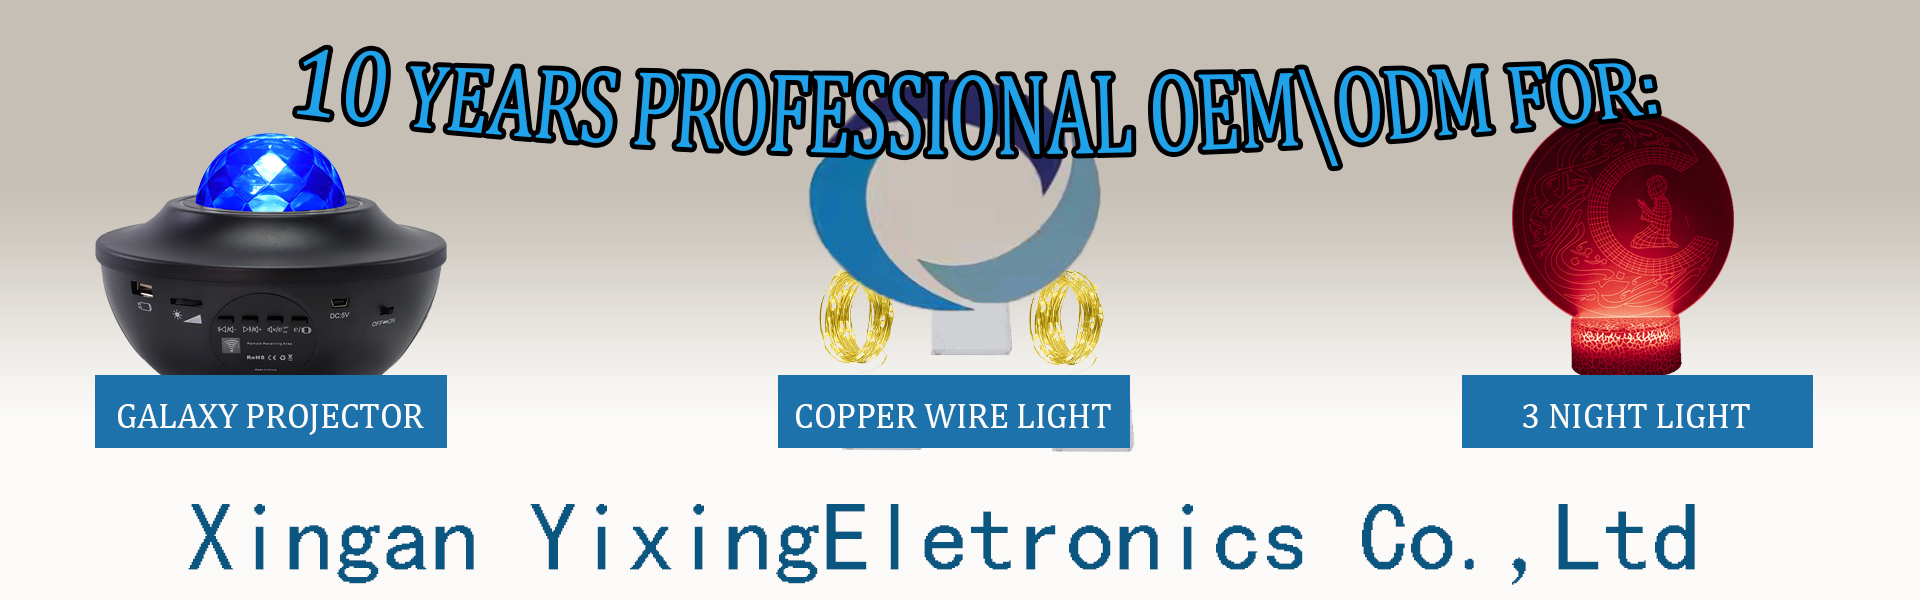 Cuivre String Lumière, projecteur étoilé, lumière denuit 3D,Xingan Xian Yixing Electronics Co., Ltd.